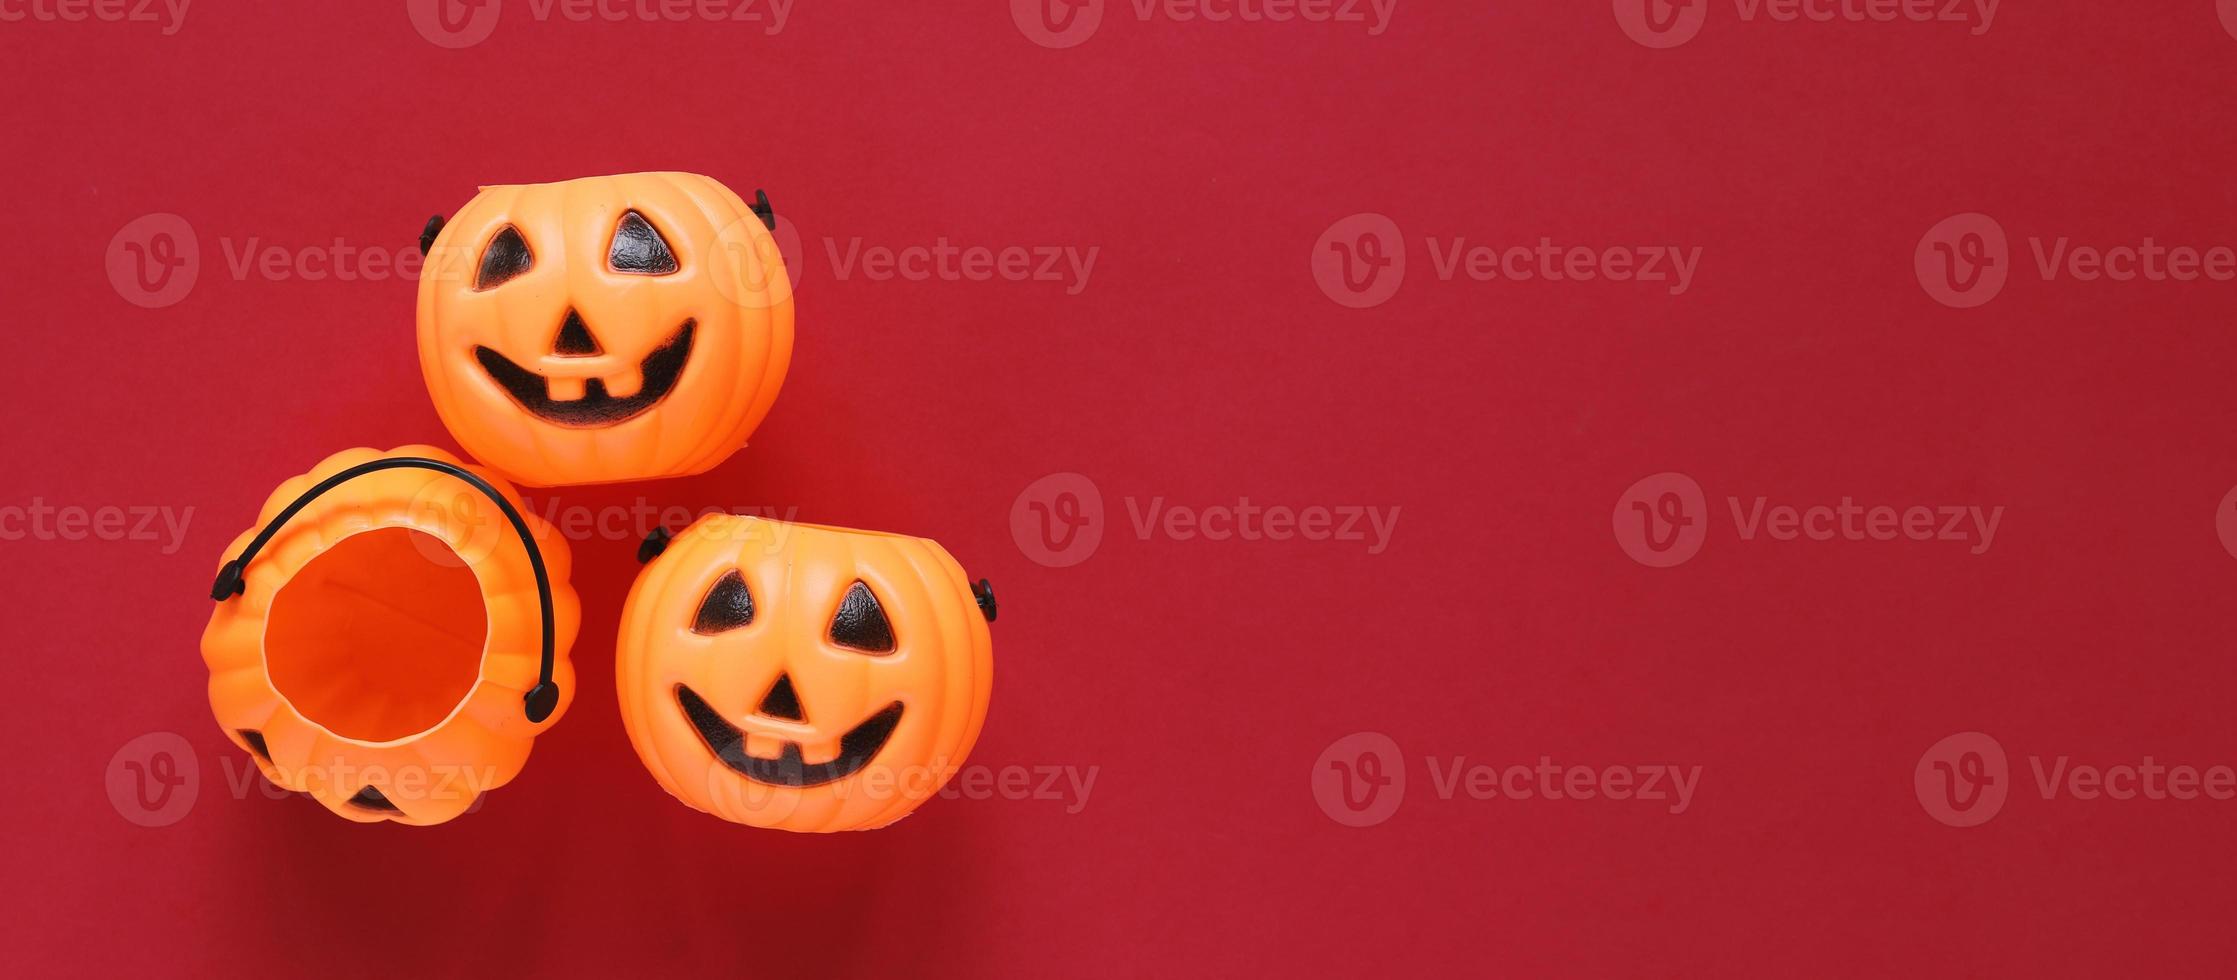 estilo plano del concepto de fiesta de halloween con calabazas de plástico decorativas sobre fondo rojo, espacio de copia con estilo de banner para texto y plantilla foto